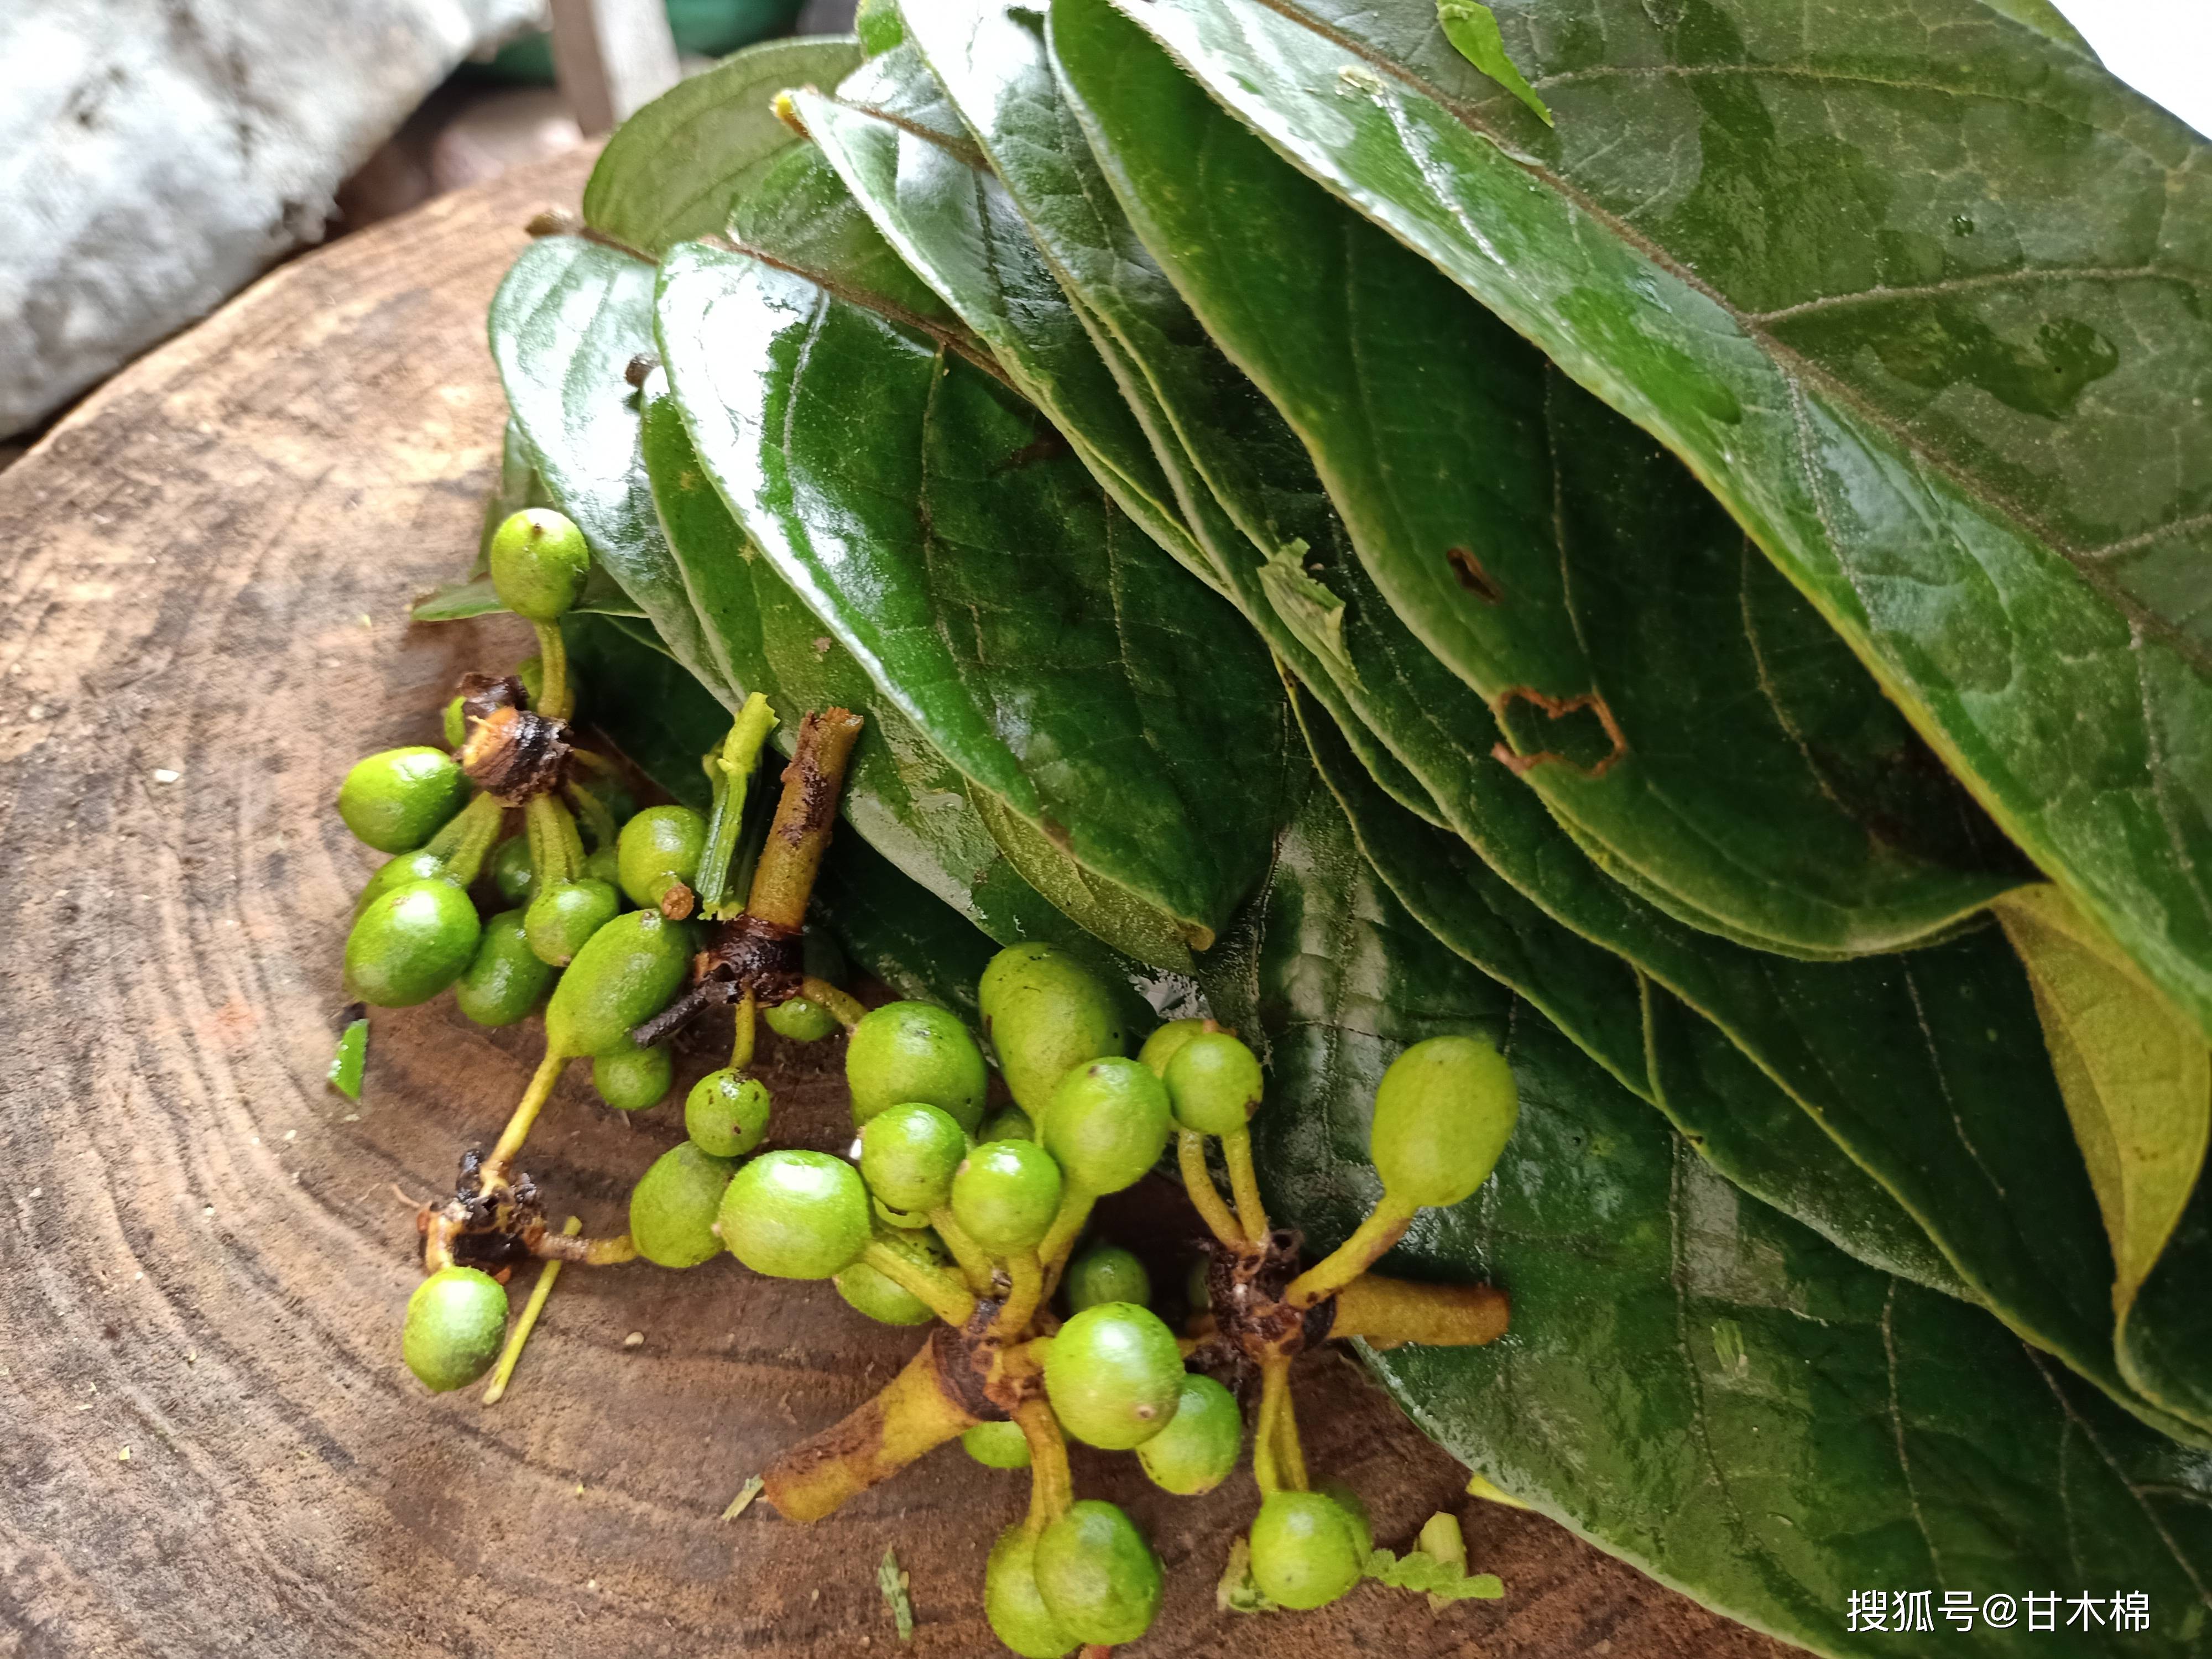 农村1种叫酒饼婆的植物,可用来制作酒曲,也是小时候常吃的野果